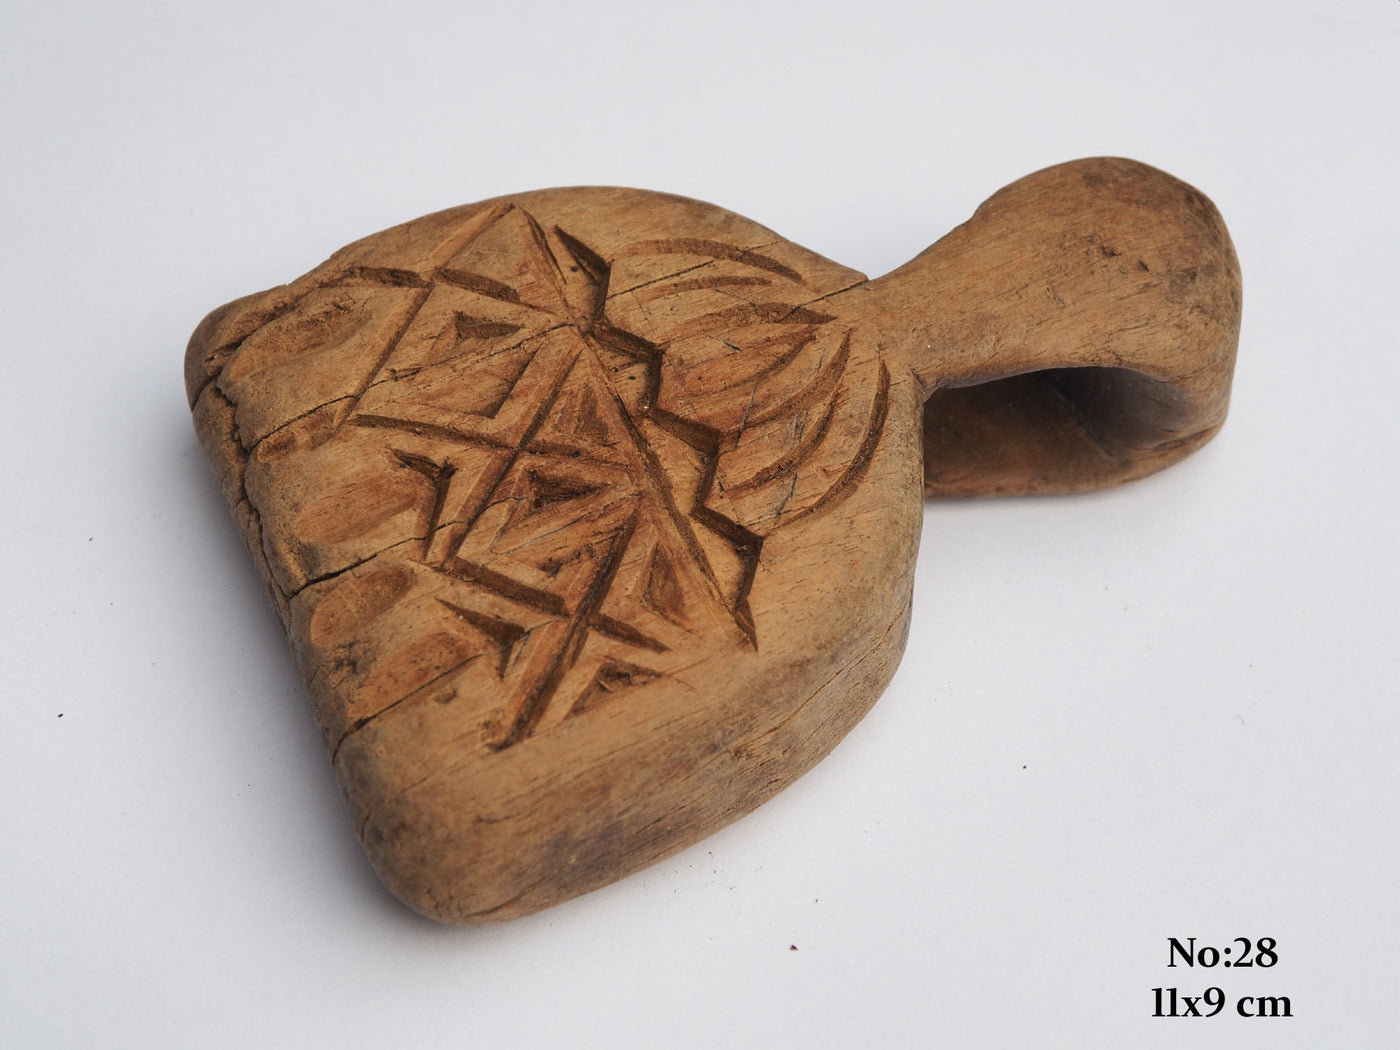 antik islamische Holz Amulett Tieramulett schützendes Ziegenamulett Swat valley Schutzamulett Waziristan pakistan Nuristan Afghanistan  Orientsbazar   